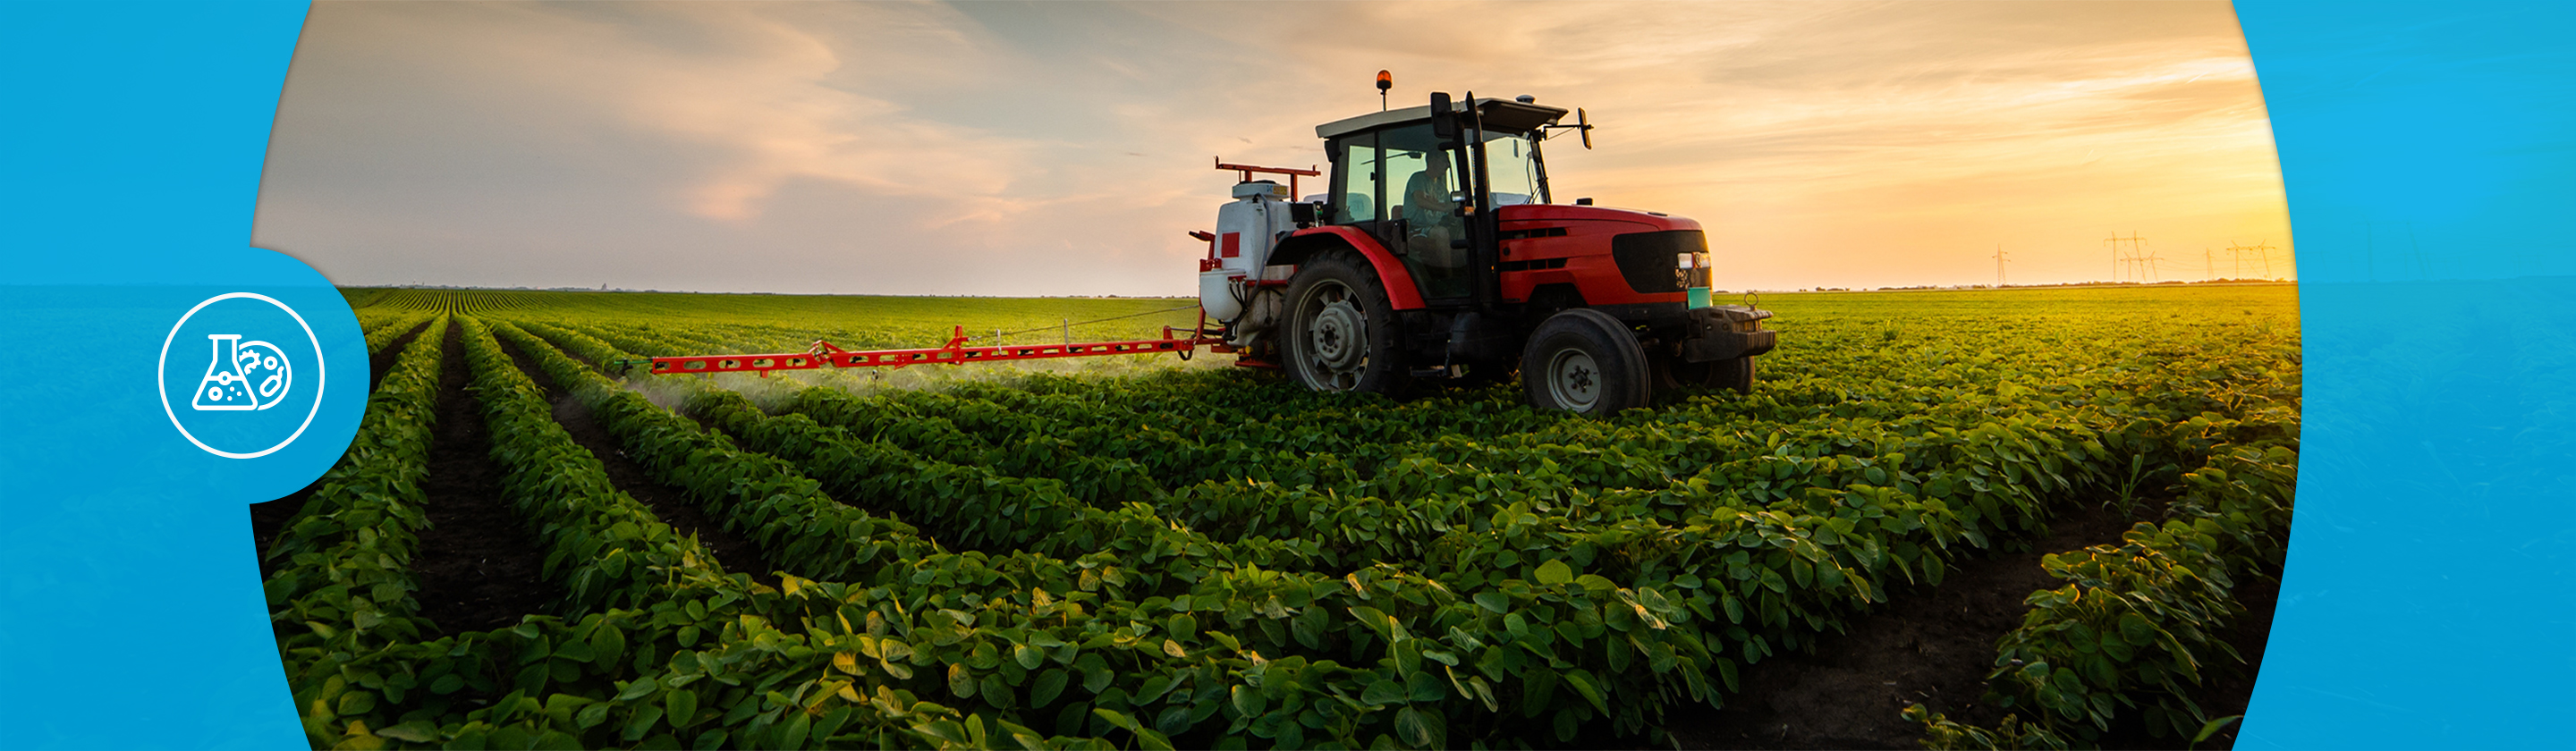 L’analyse de résidus de pesticides dans les denrées alimentaires